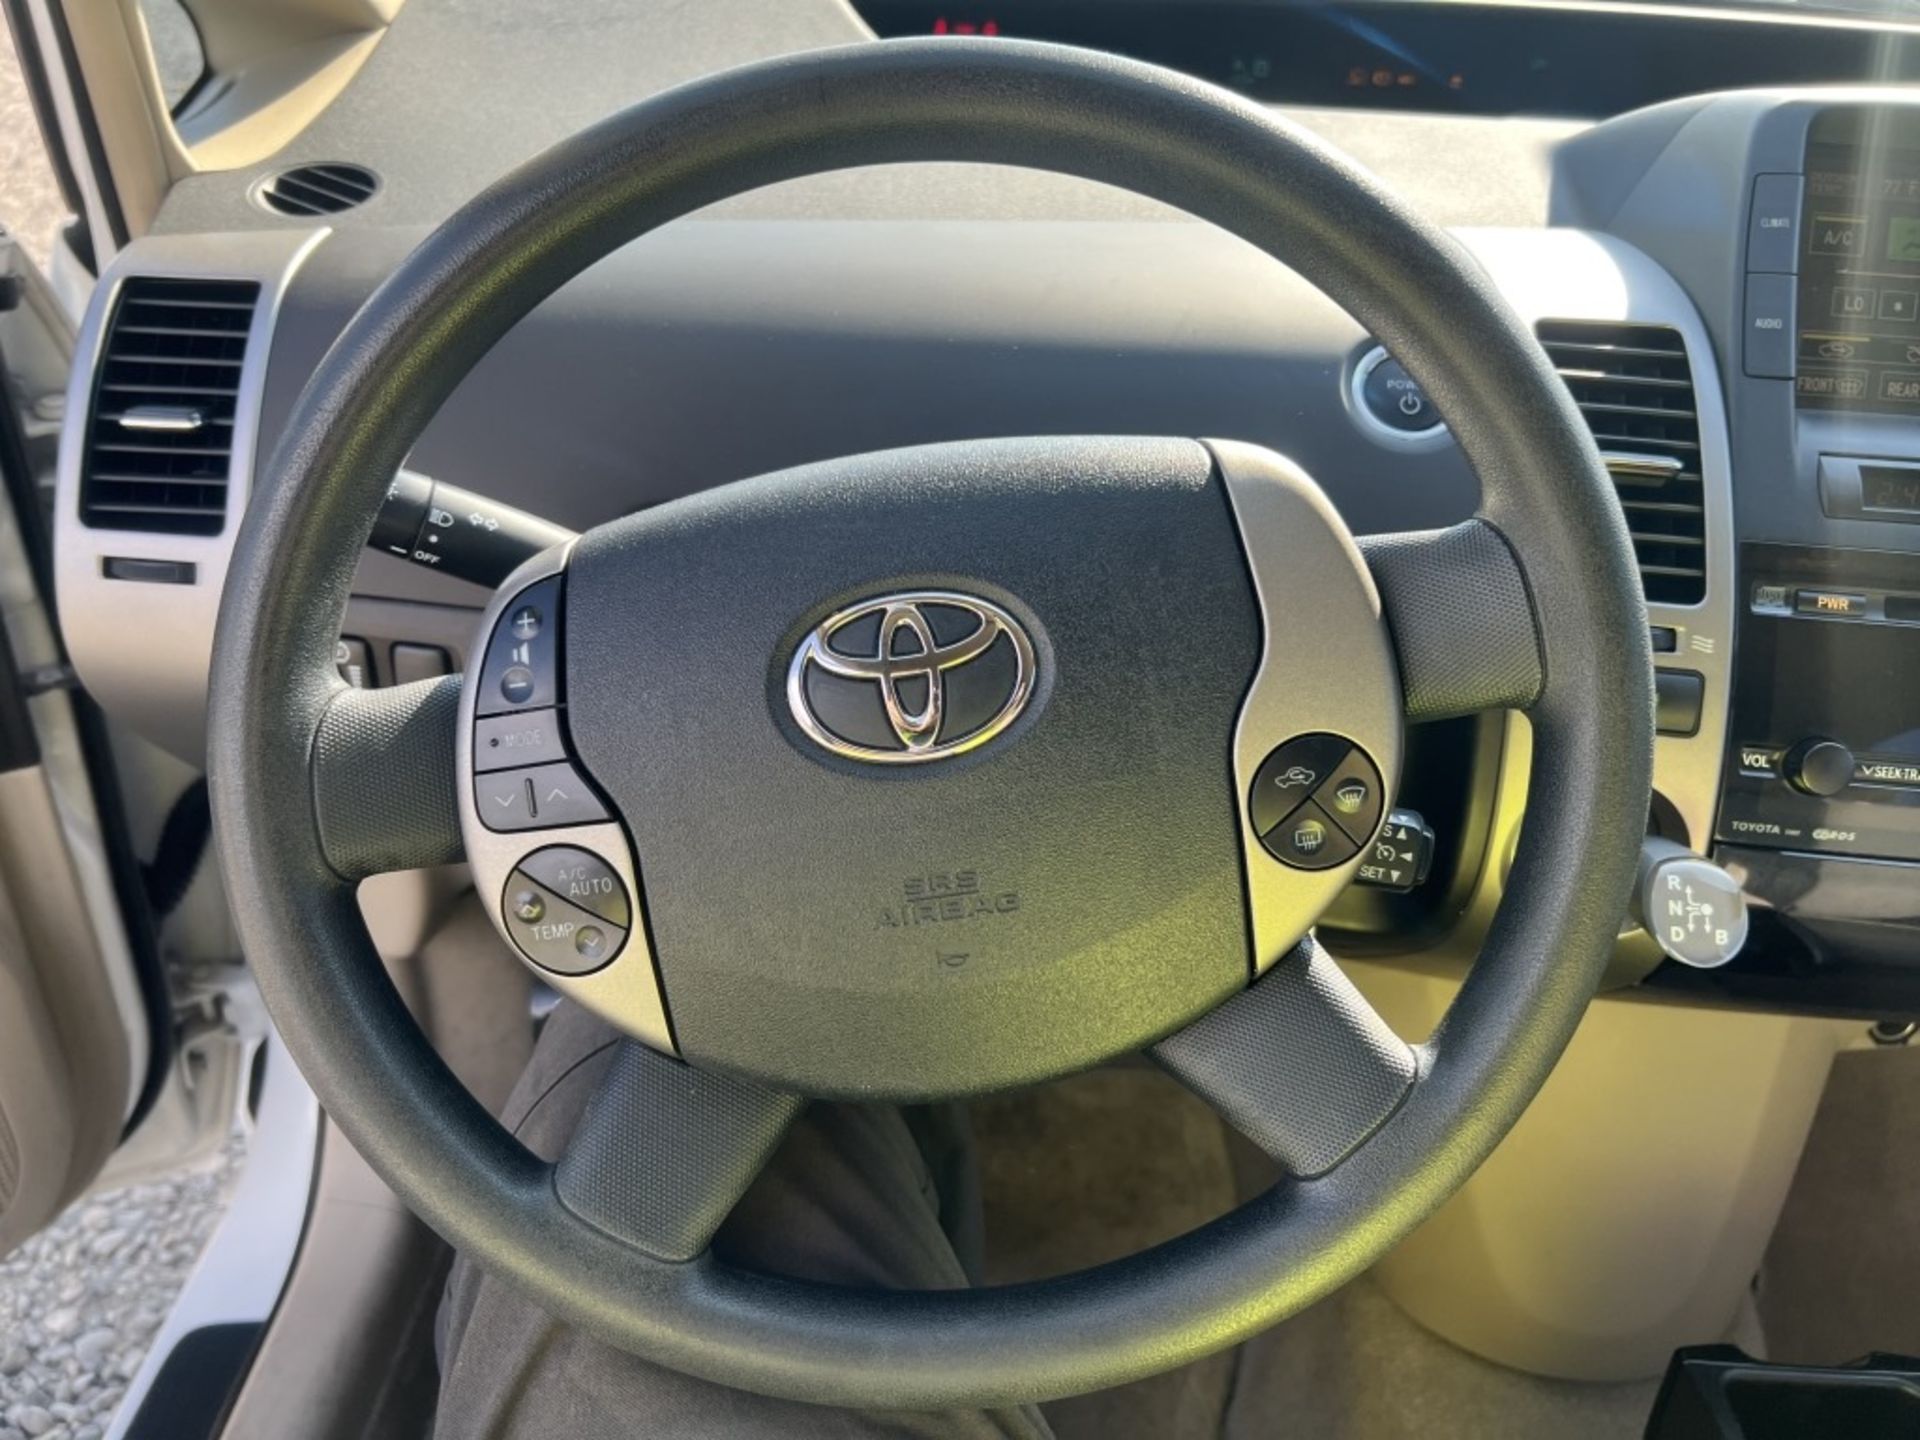 2005 Toyota Prius Hybrid Sedan - Image 18 of 22